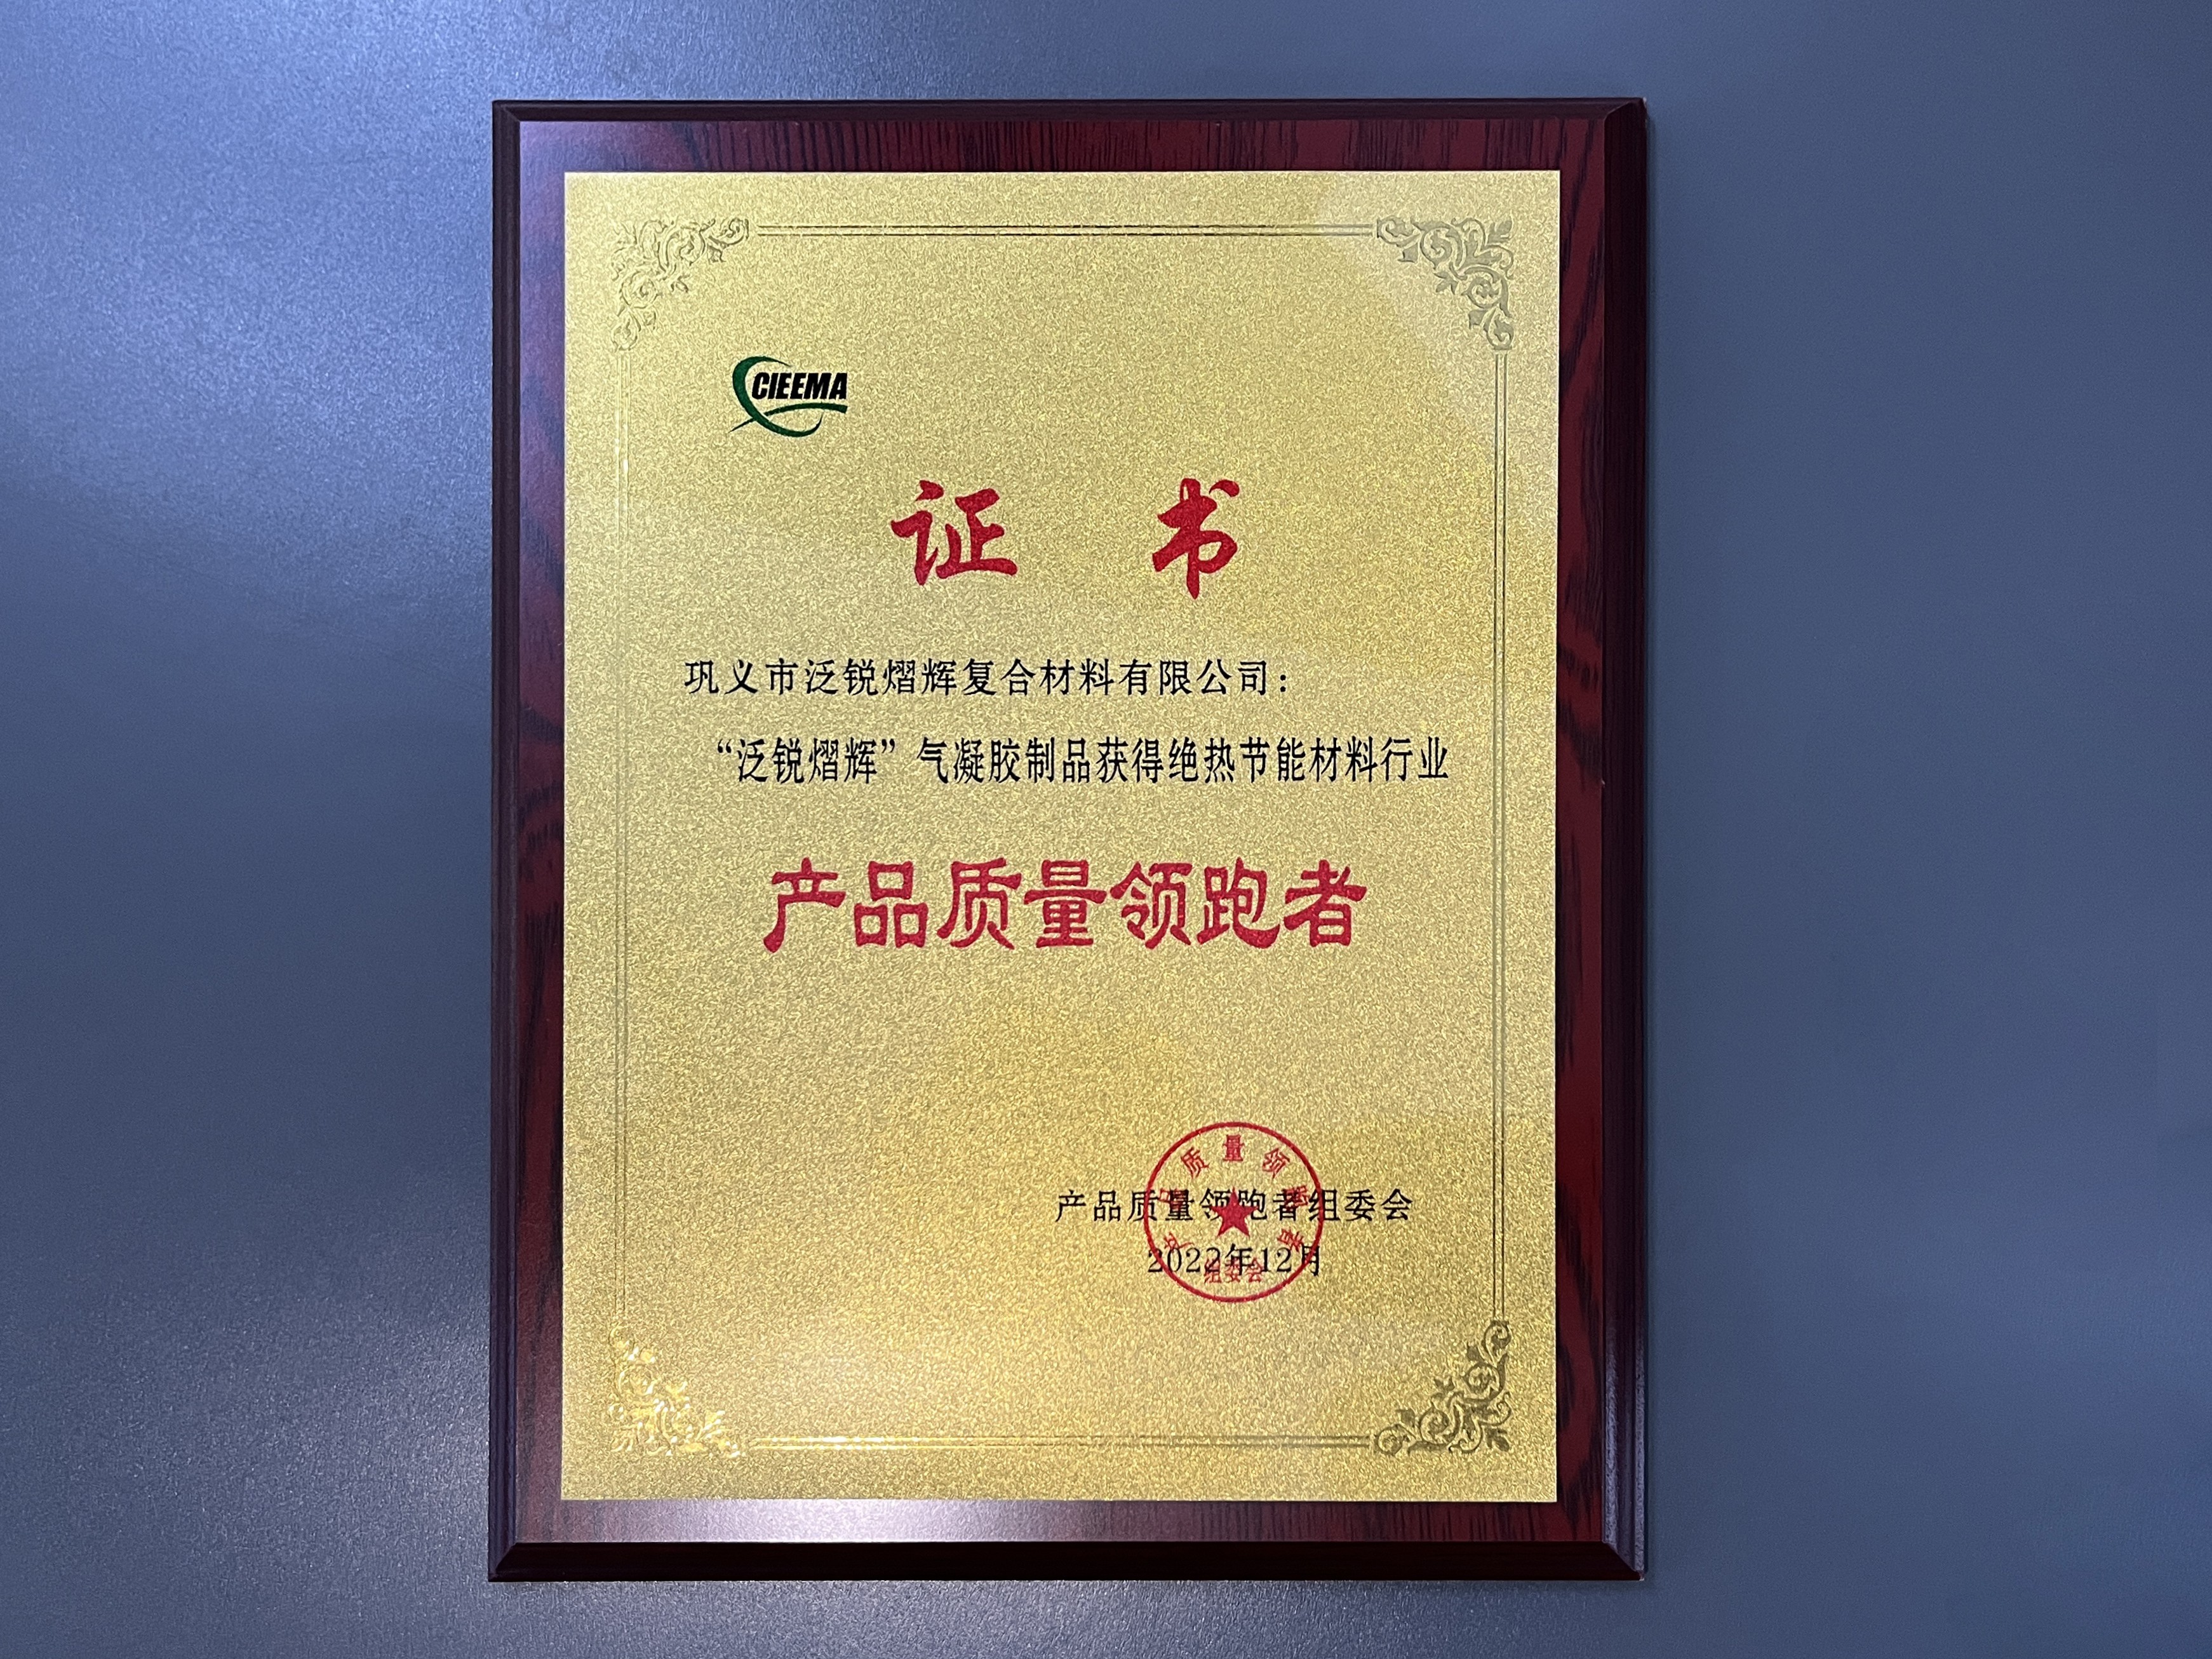  产品质量领跑者——中国绝热节能材料协会